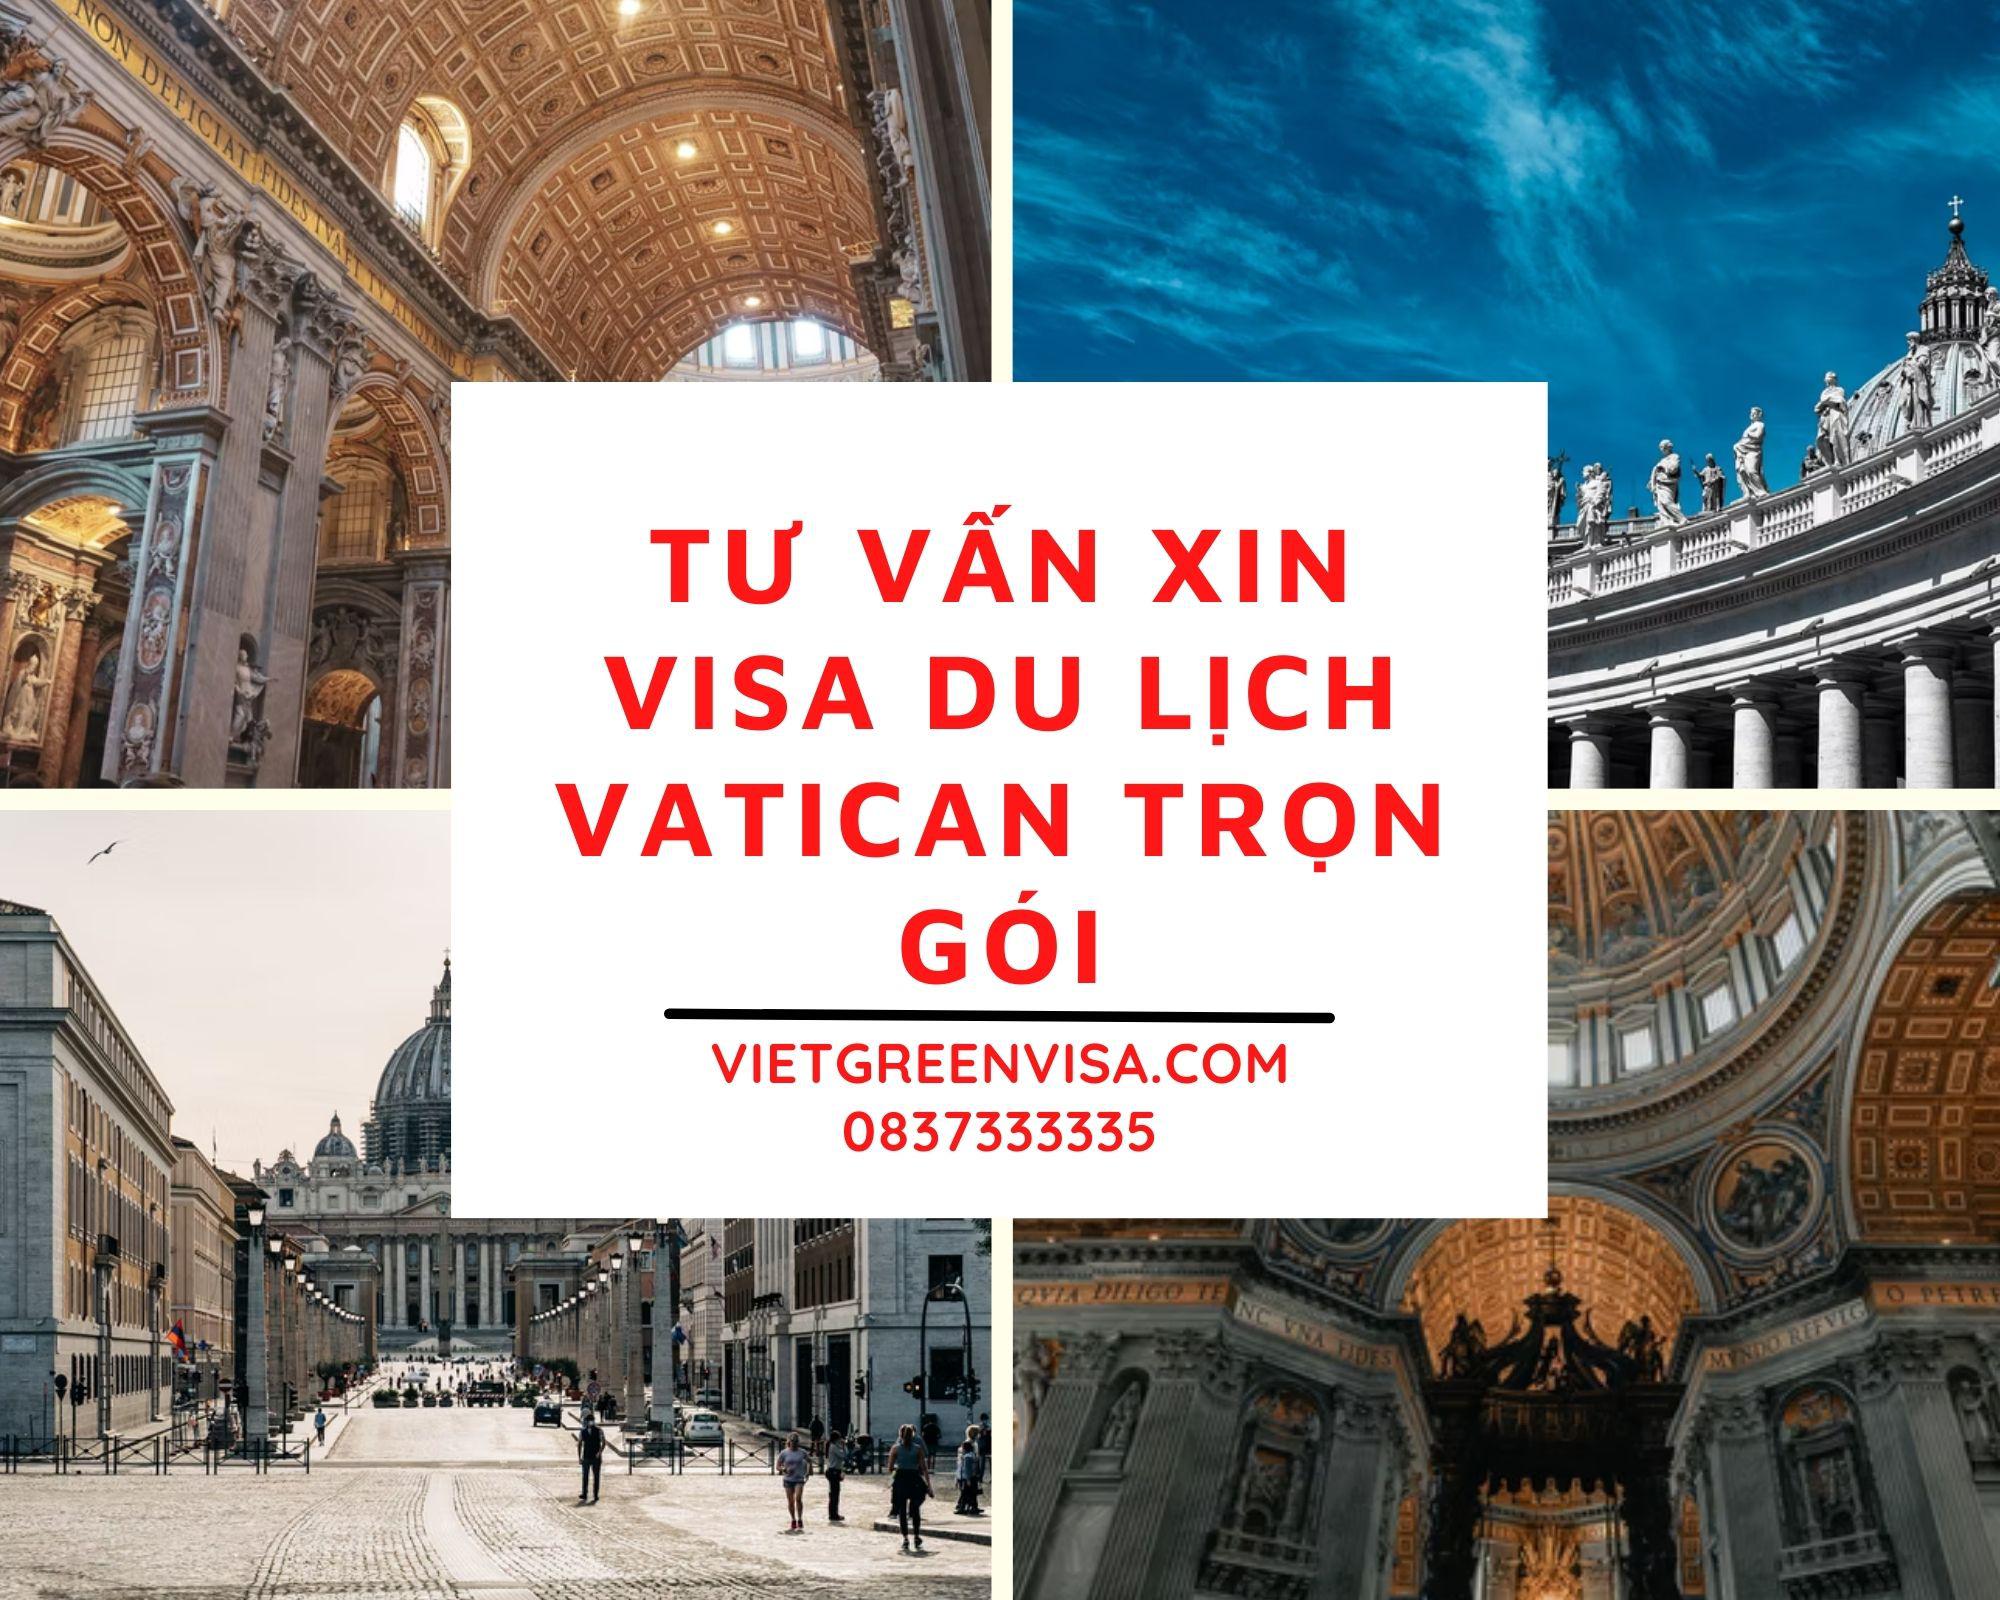 Dịch vụ visa đi du lịch Vatican trọn gói, giá rẻ